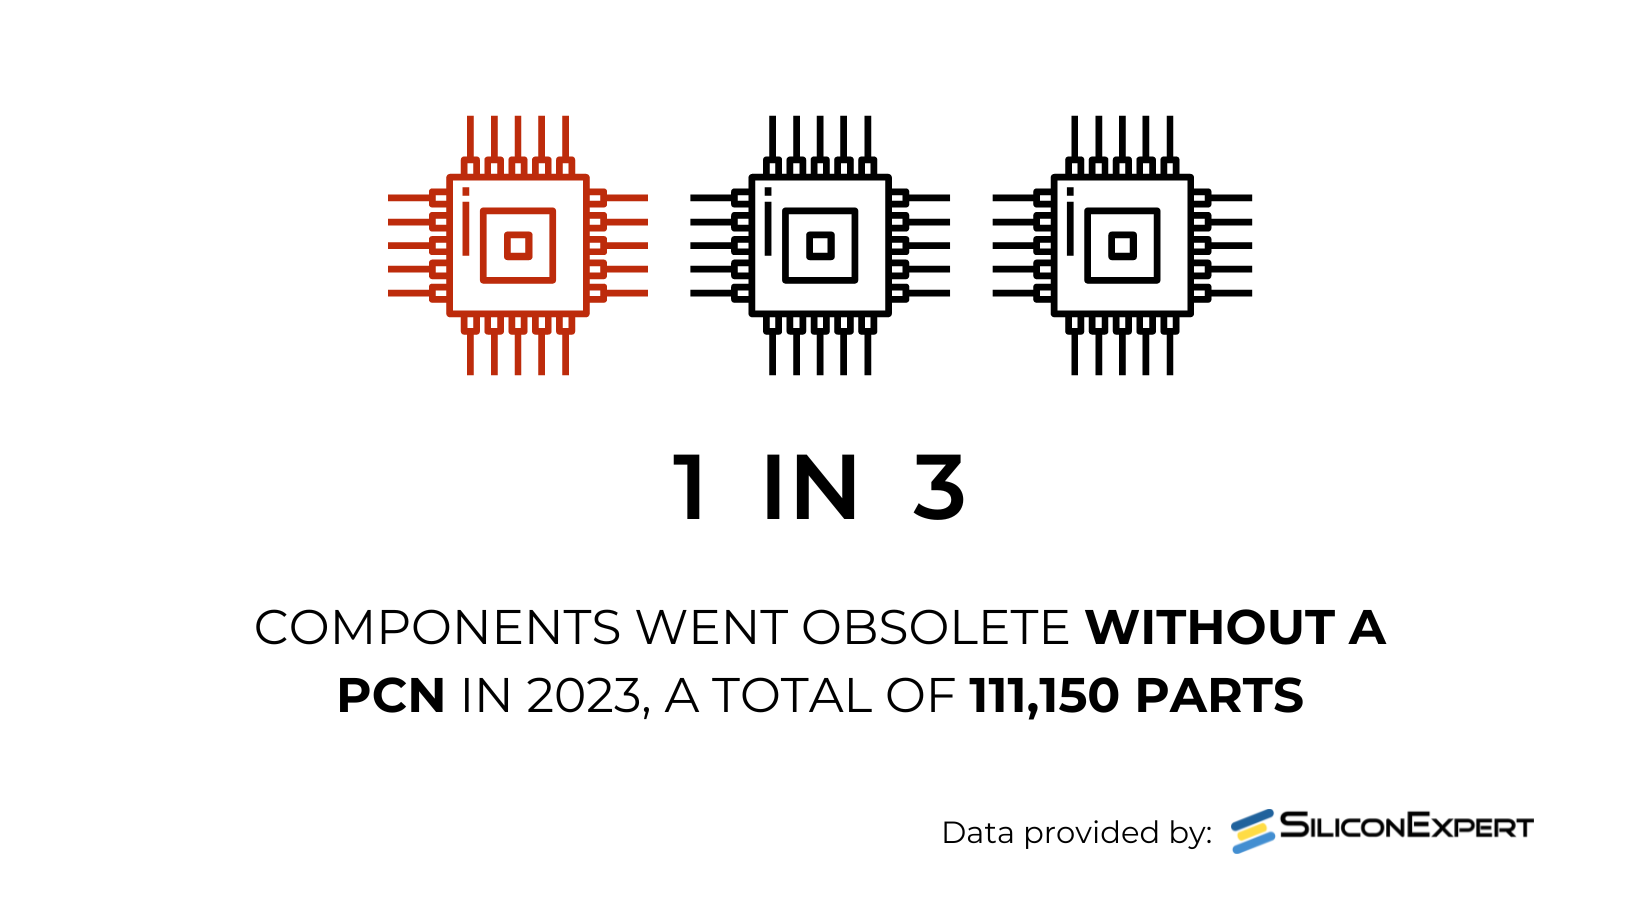 Infografik zur Anzahl der Teile, die im Jahr 2023 ohne PCN veraltet sein werden